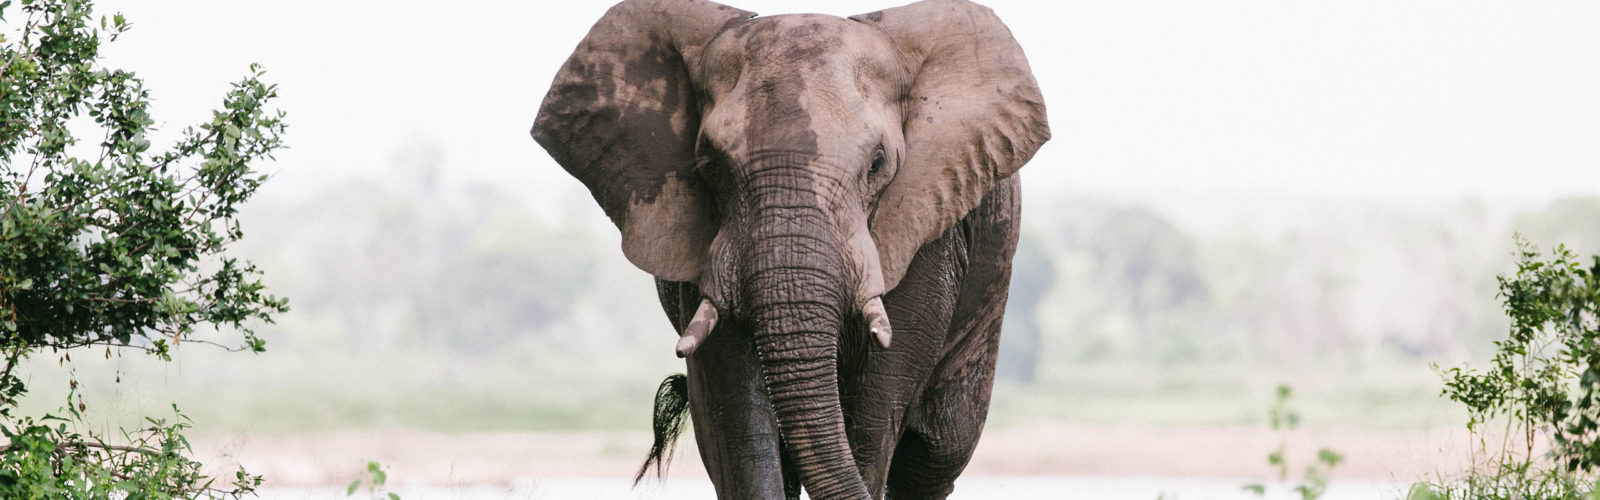 elephant-chilo-gorge-gonarezhou-zimbabwe